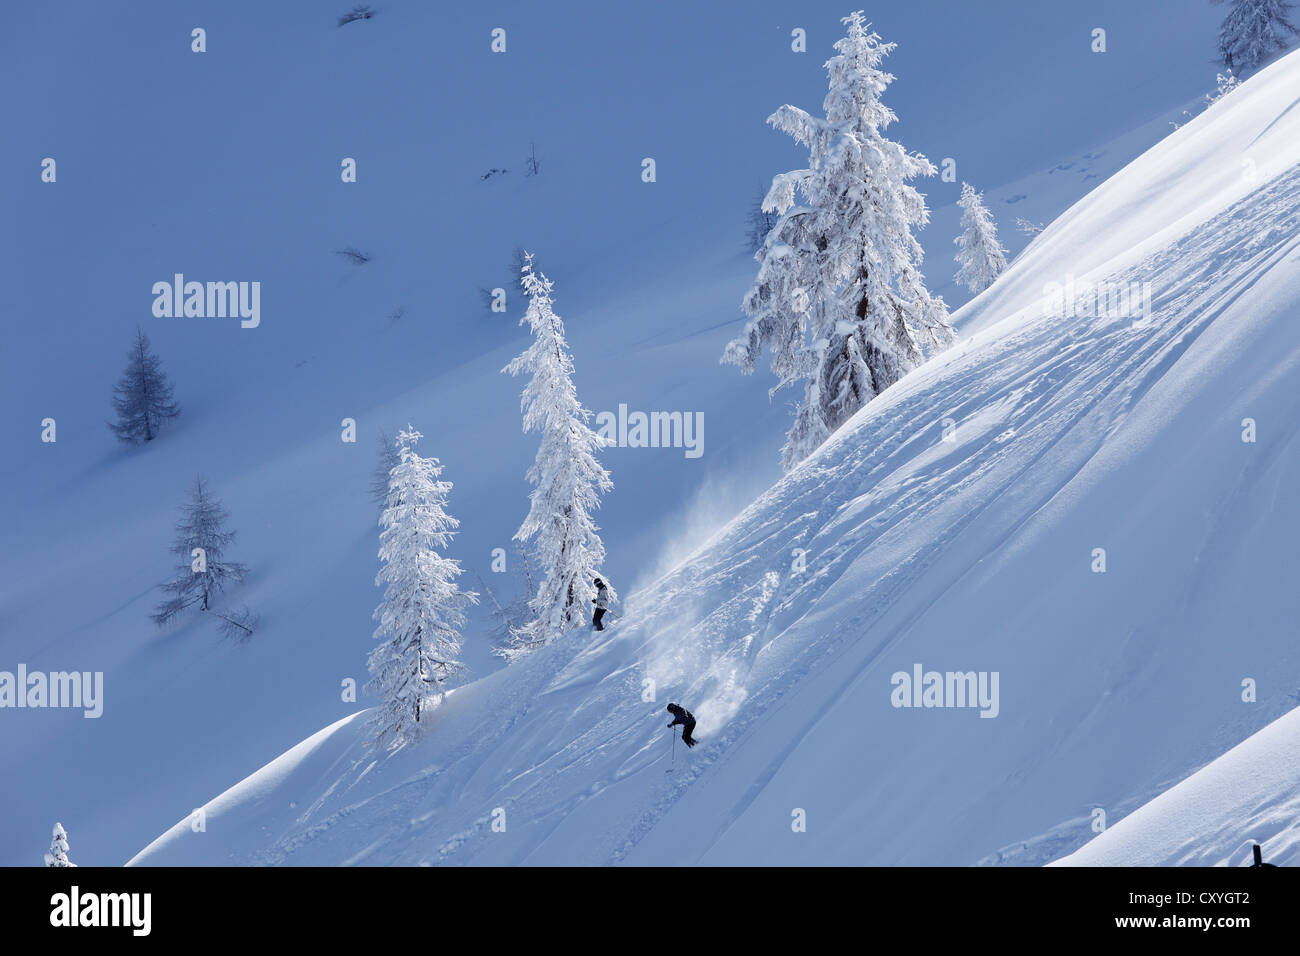 La neige poudreuse, Hahn'l Piste de ski, ski Reiteralm Pichl-Preunegg, près de Schladming, Styrie, Autriche, Europe Banque D'Images